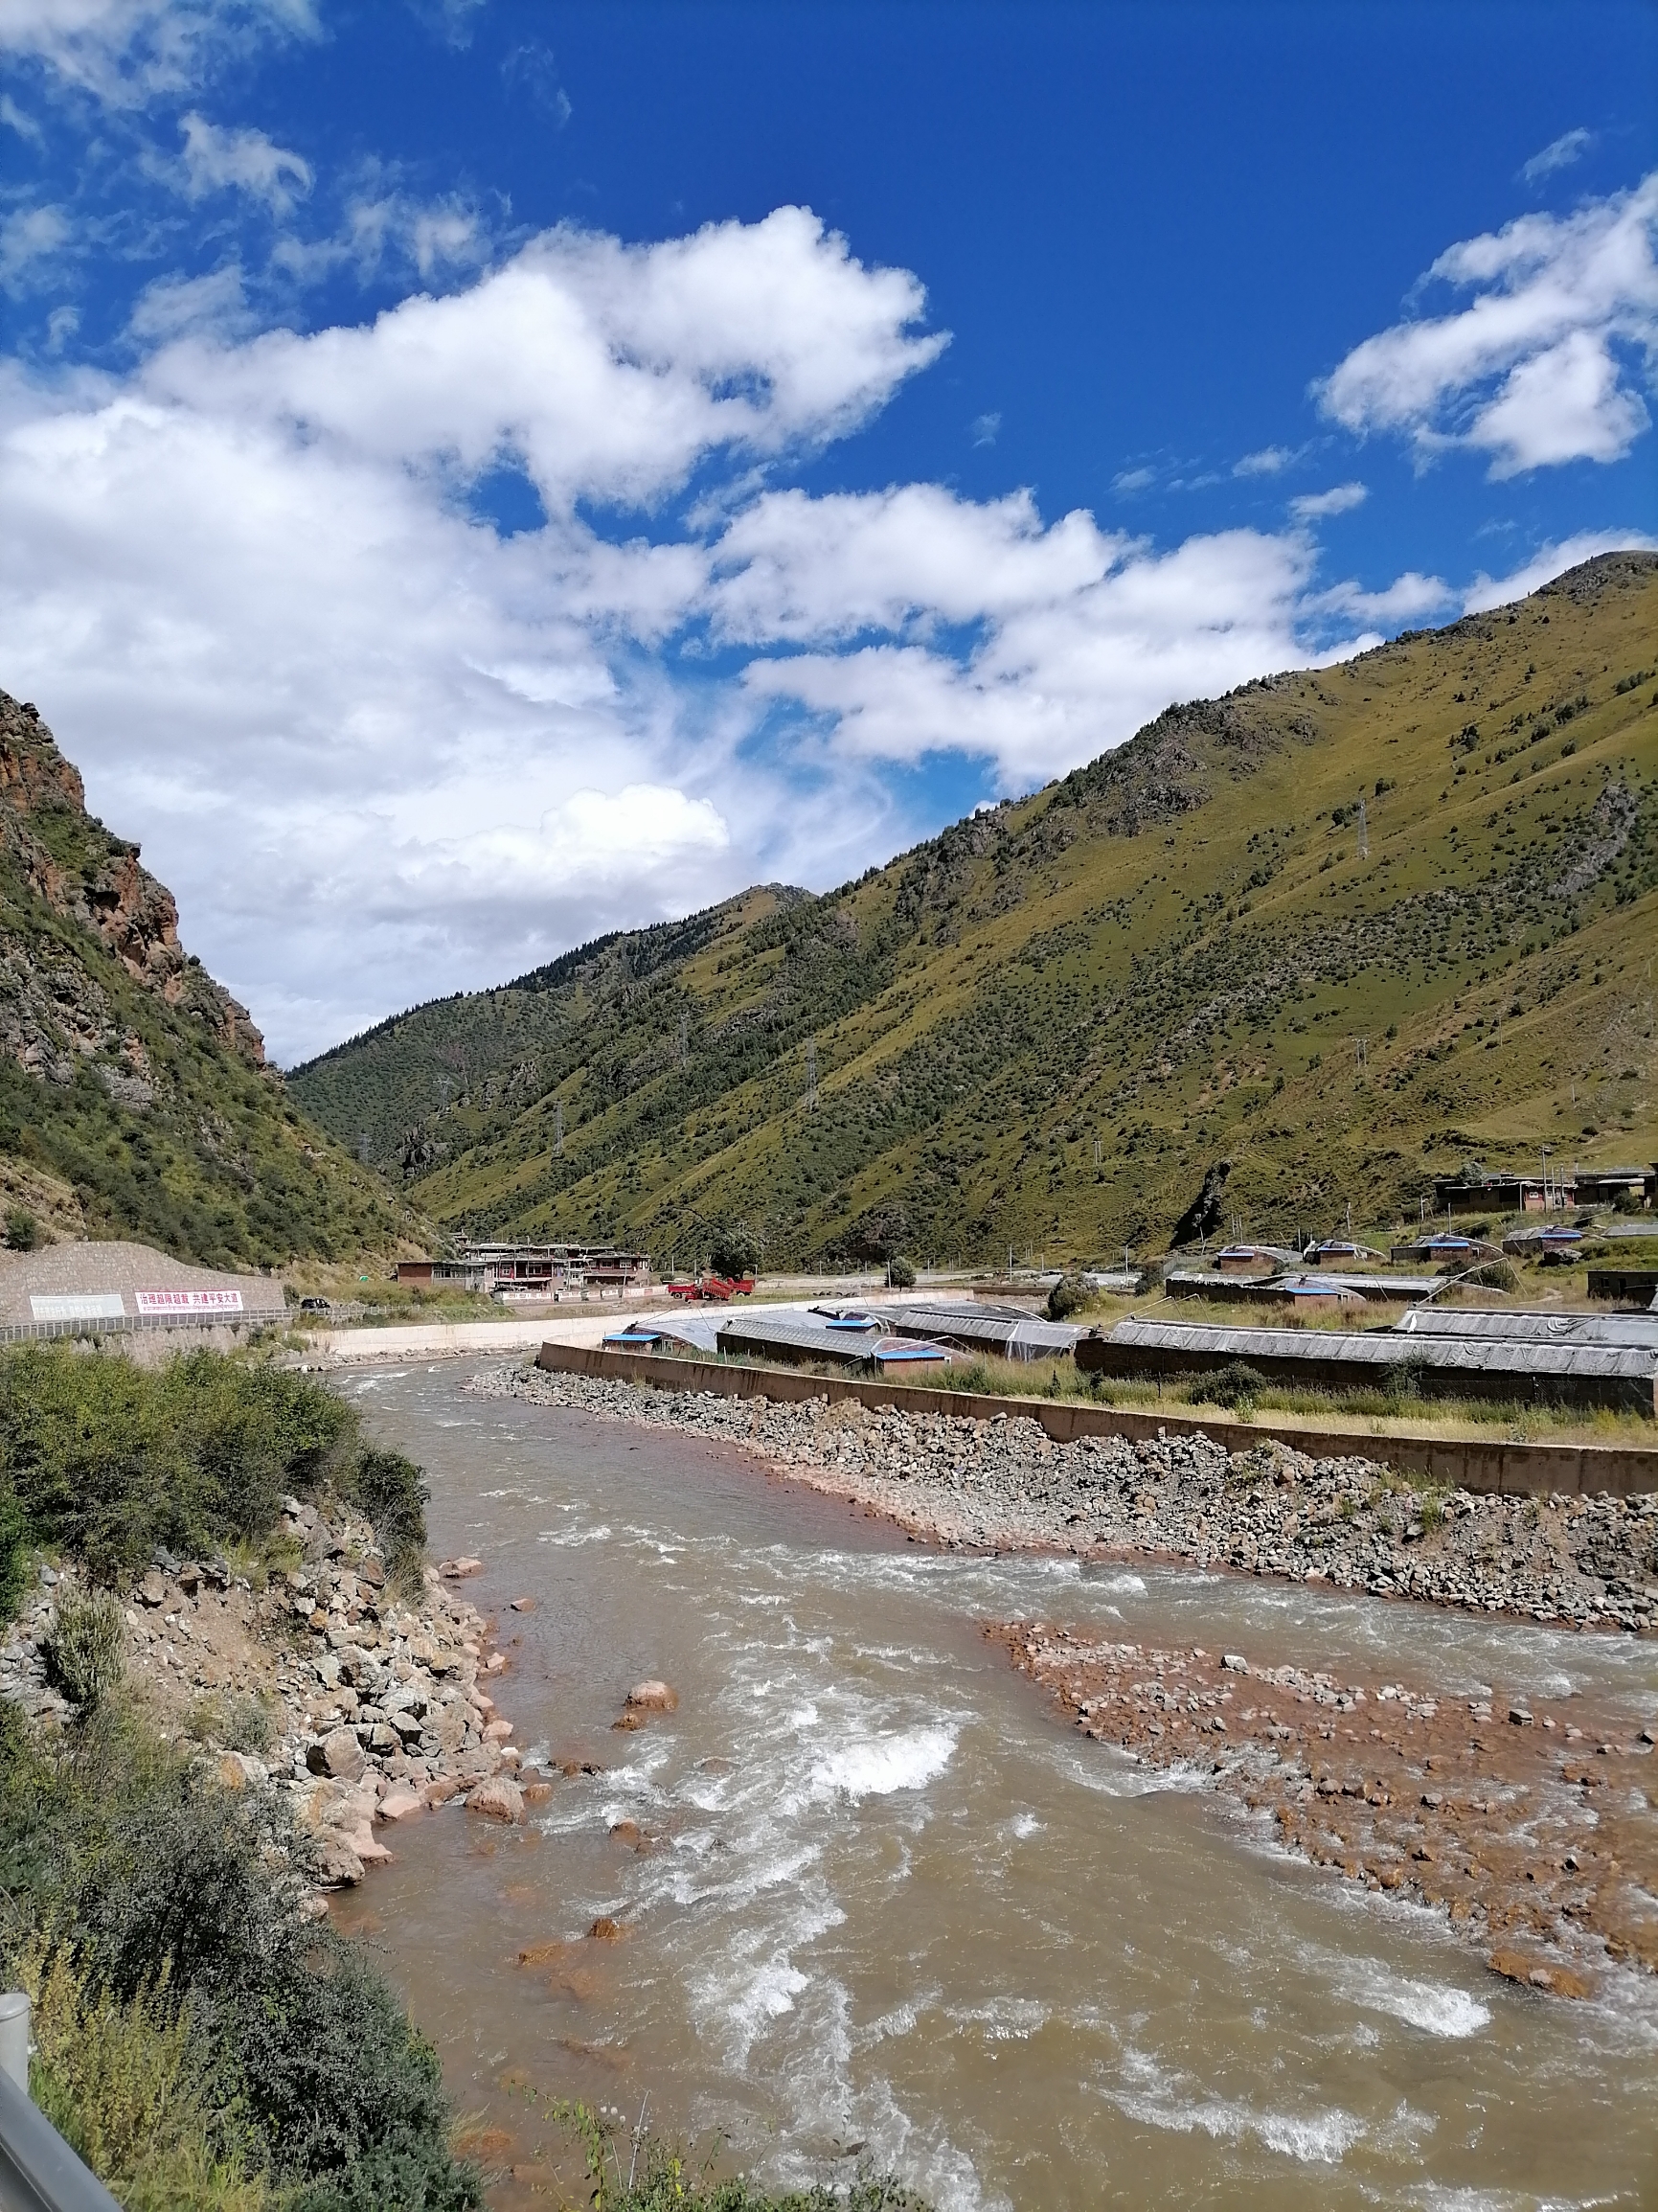 #玩转户外 #发现旅途的色彩 发源于青藏高原的雅砻江是川西北地区重要的河流，蜿蜒上千公里，流经地域广